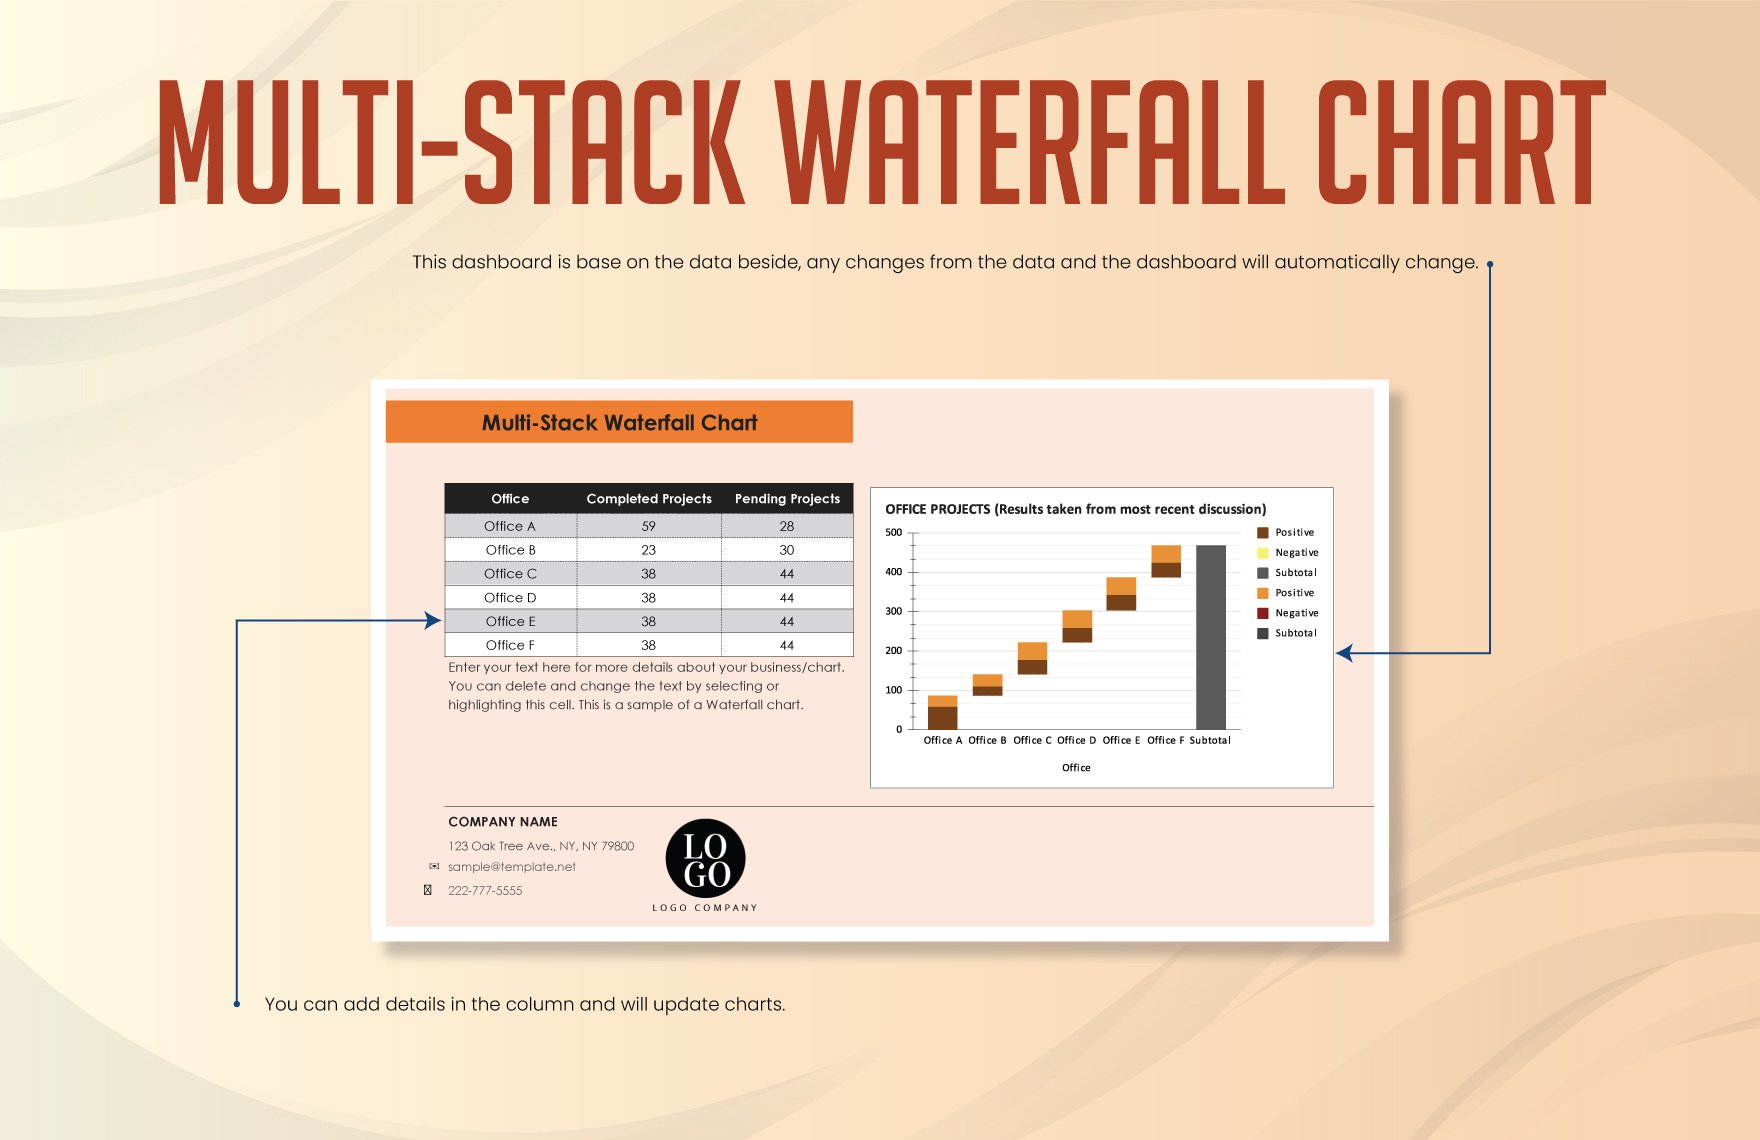 Multi-Stack Waterfall Chart